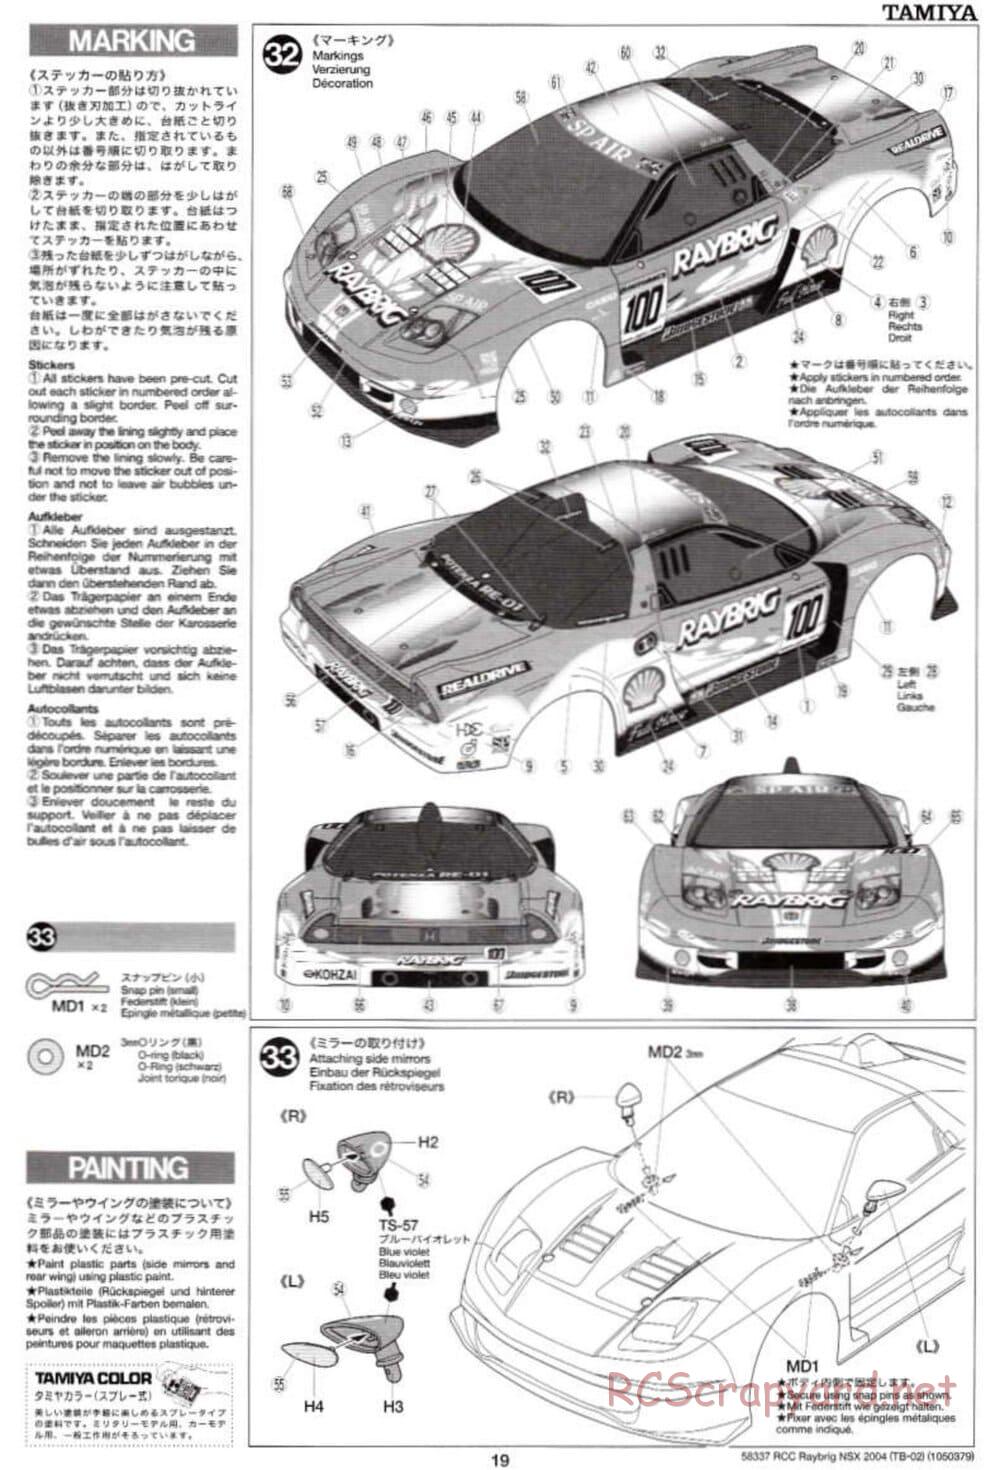 Tamiya - Raybrig NSX 2004 - TB-02 Chassis - Manual - Page 19